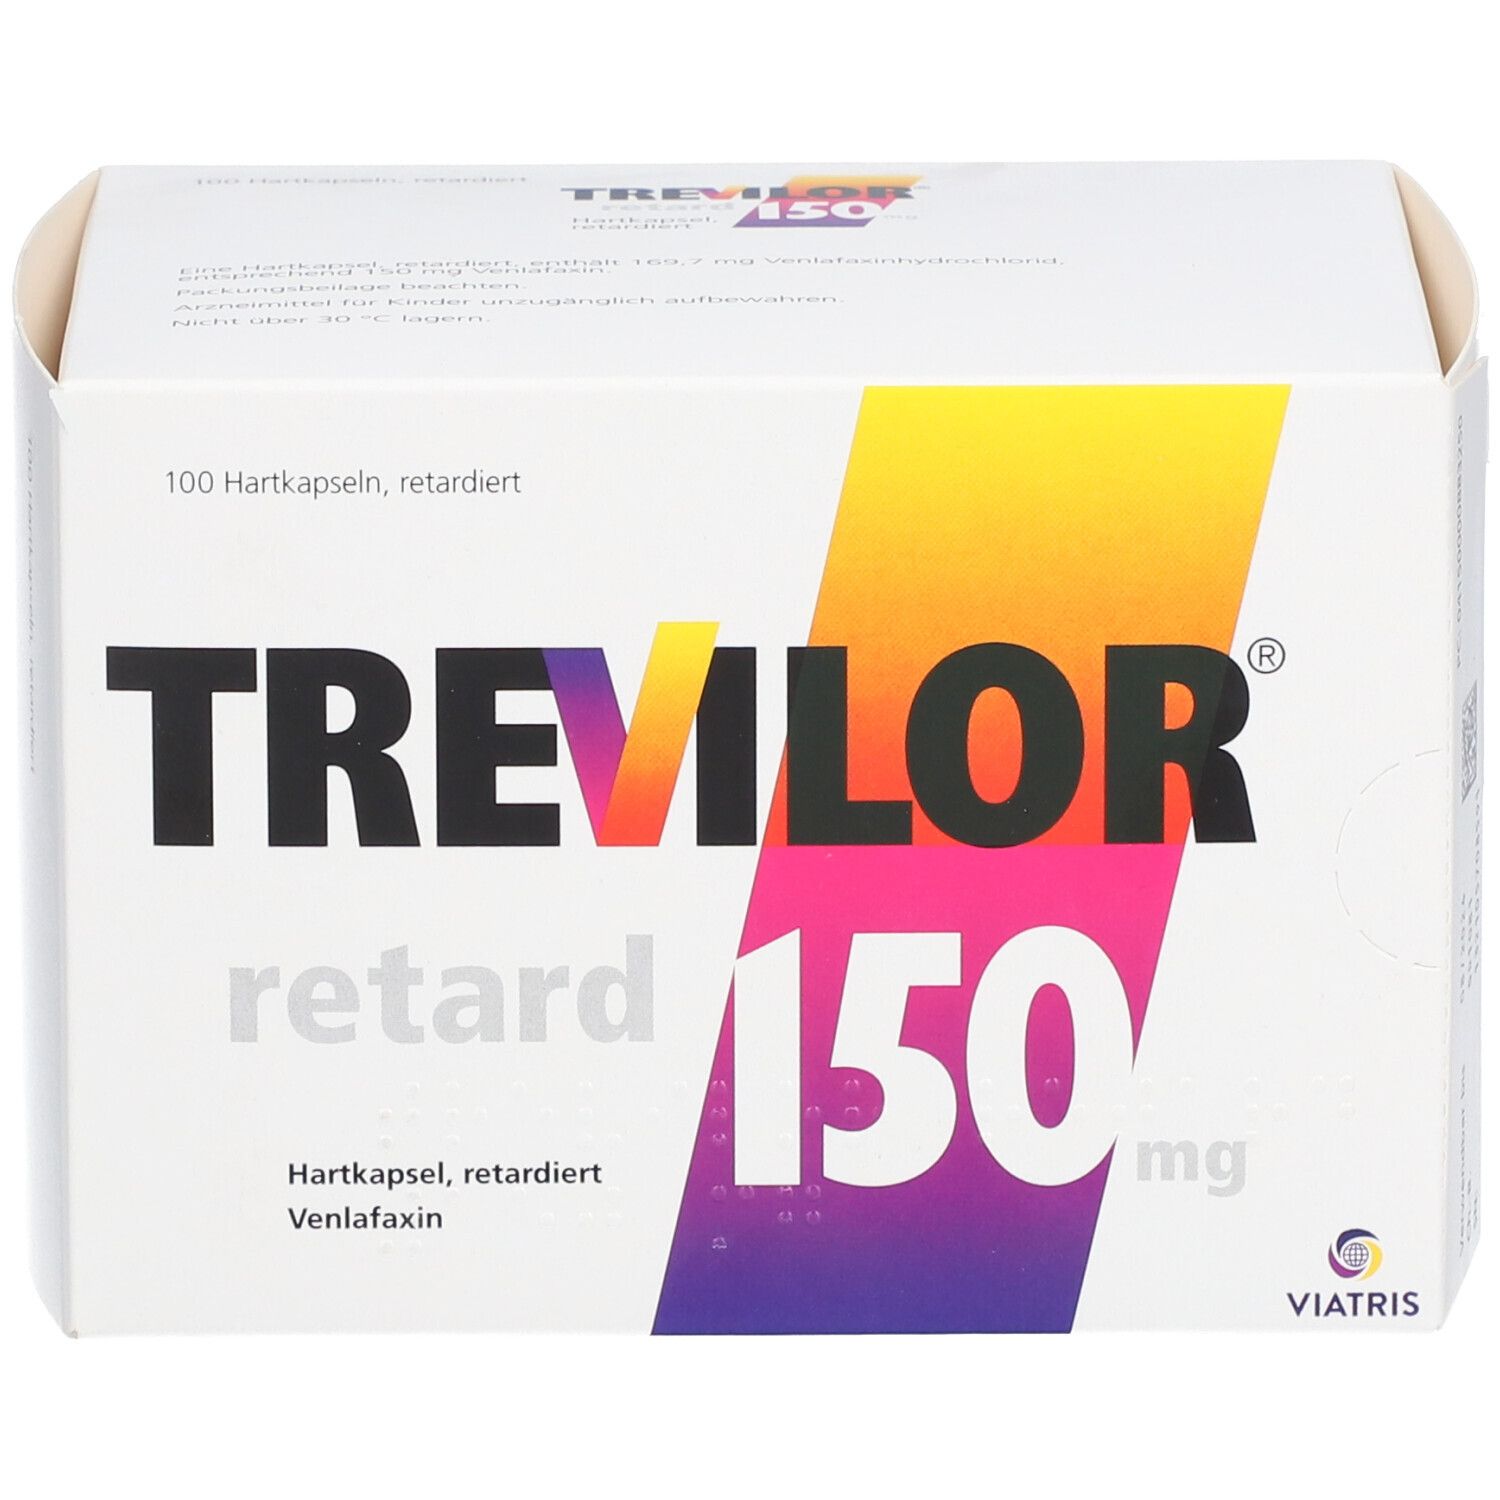 Trevilor® retard 150 mg